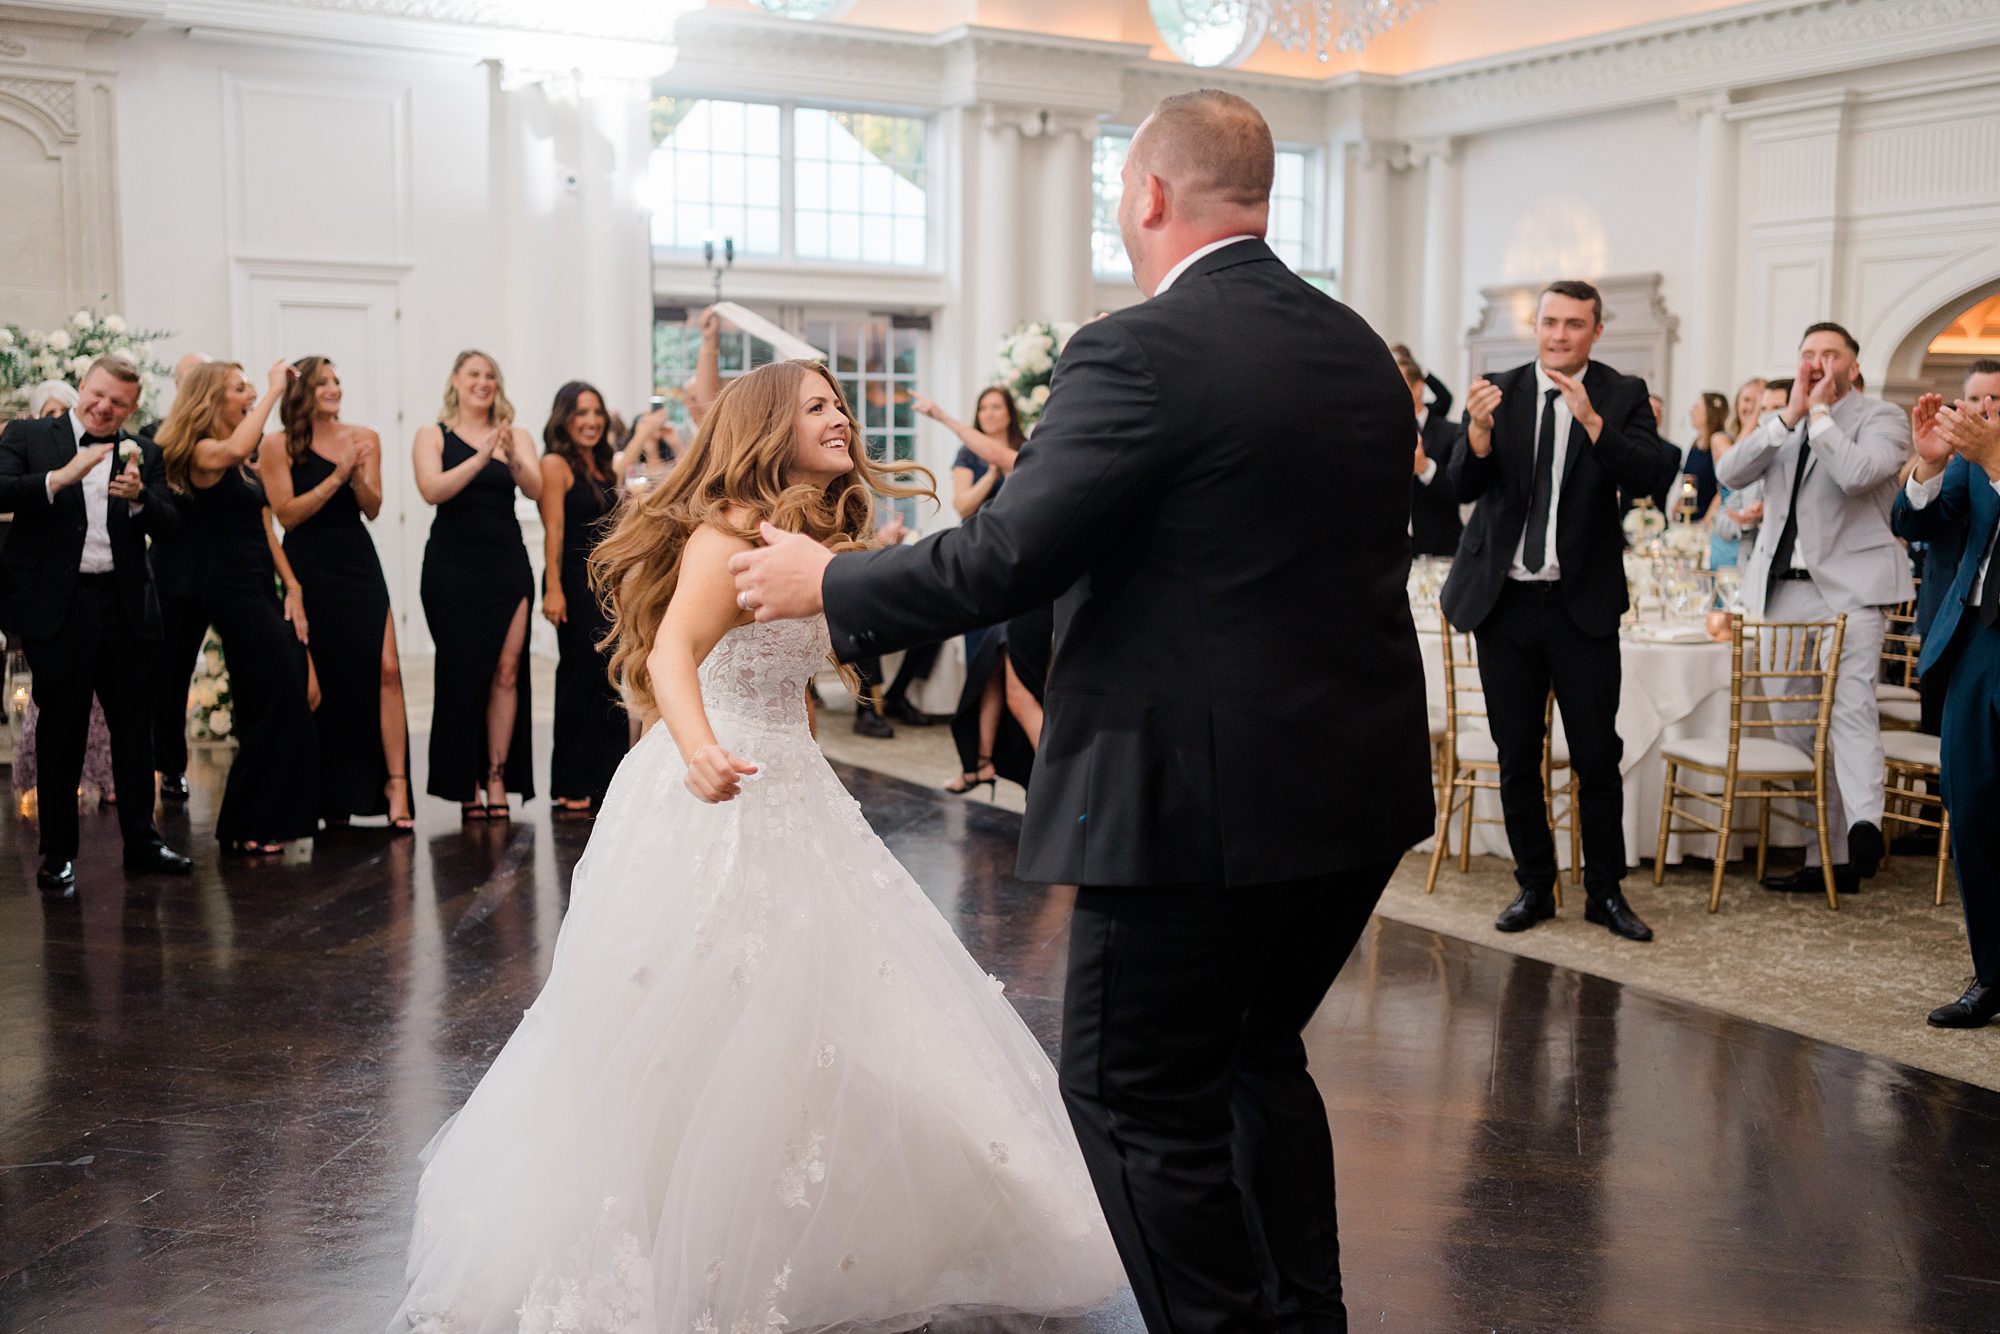 bride and groom on dance floor